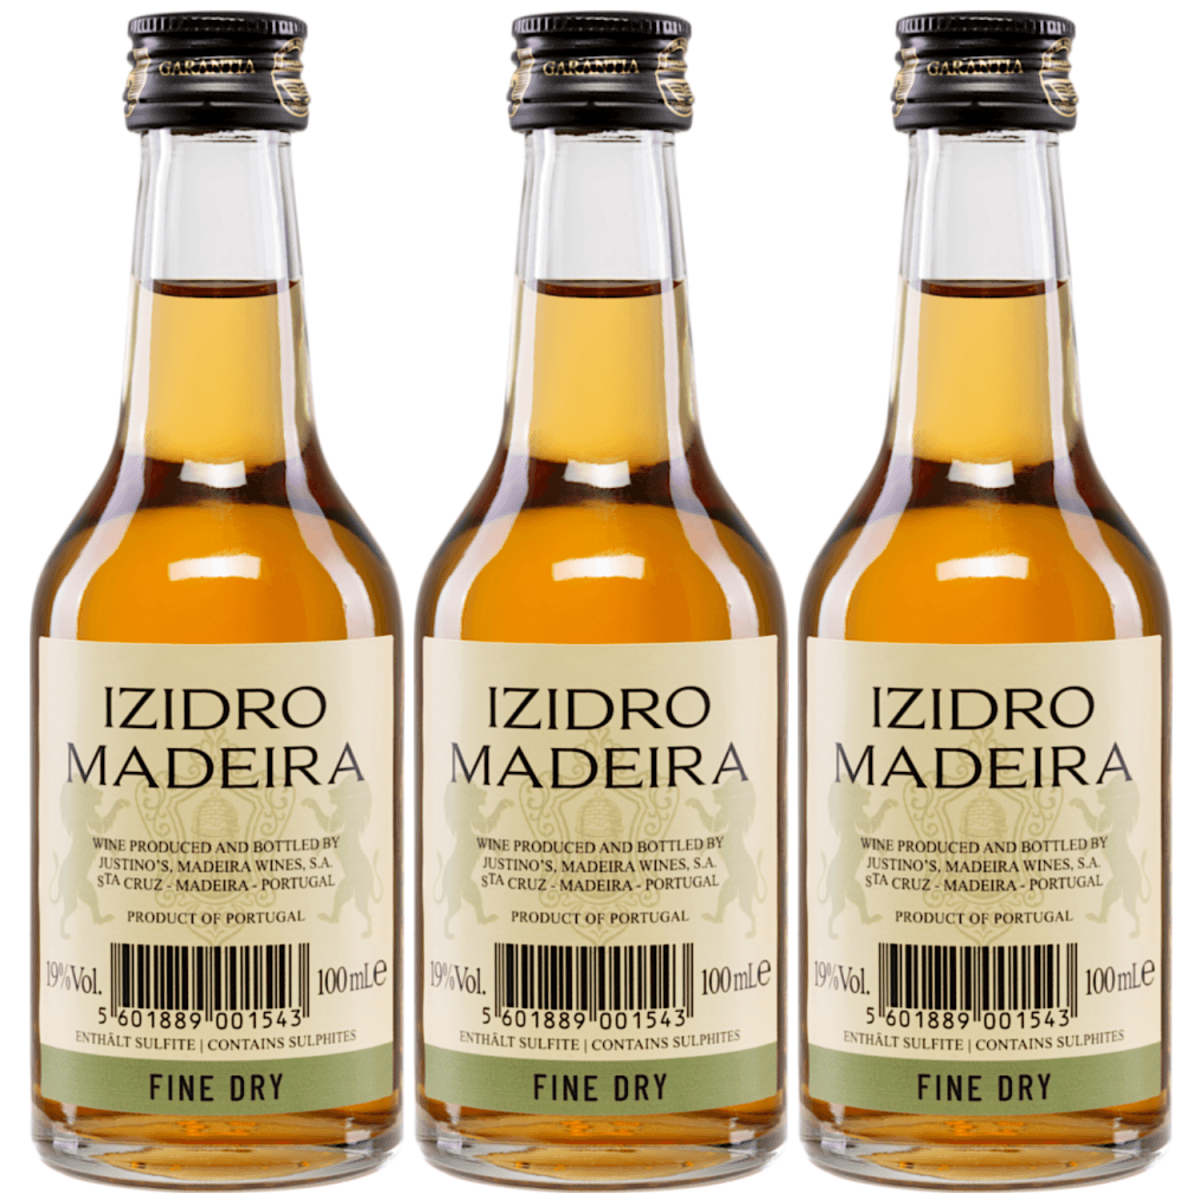 Vinhos Justino Henriques Justino's Izidro Fine Dry 3 Years Old Miniatur Madeira Likörwein trocken Portugal (3 Flaschen) - Versanel -